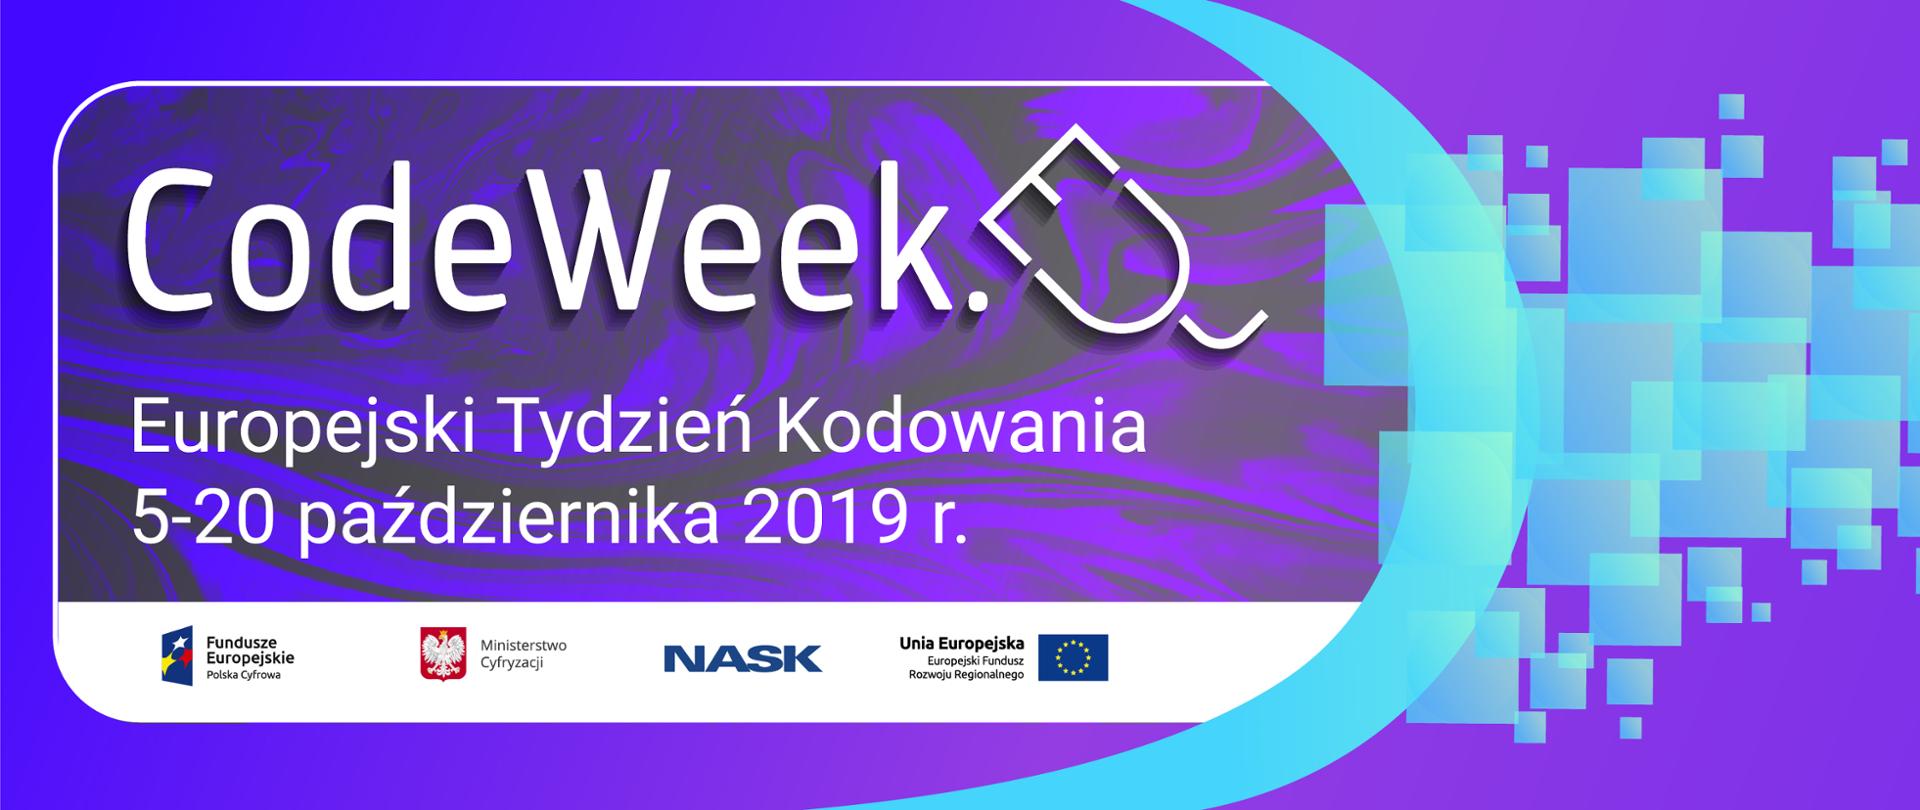 Ilustracja ukazuje napis: CodeWeek. Europejski Tydzień Kodowania 5-20 października 2019 r.